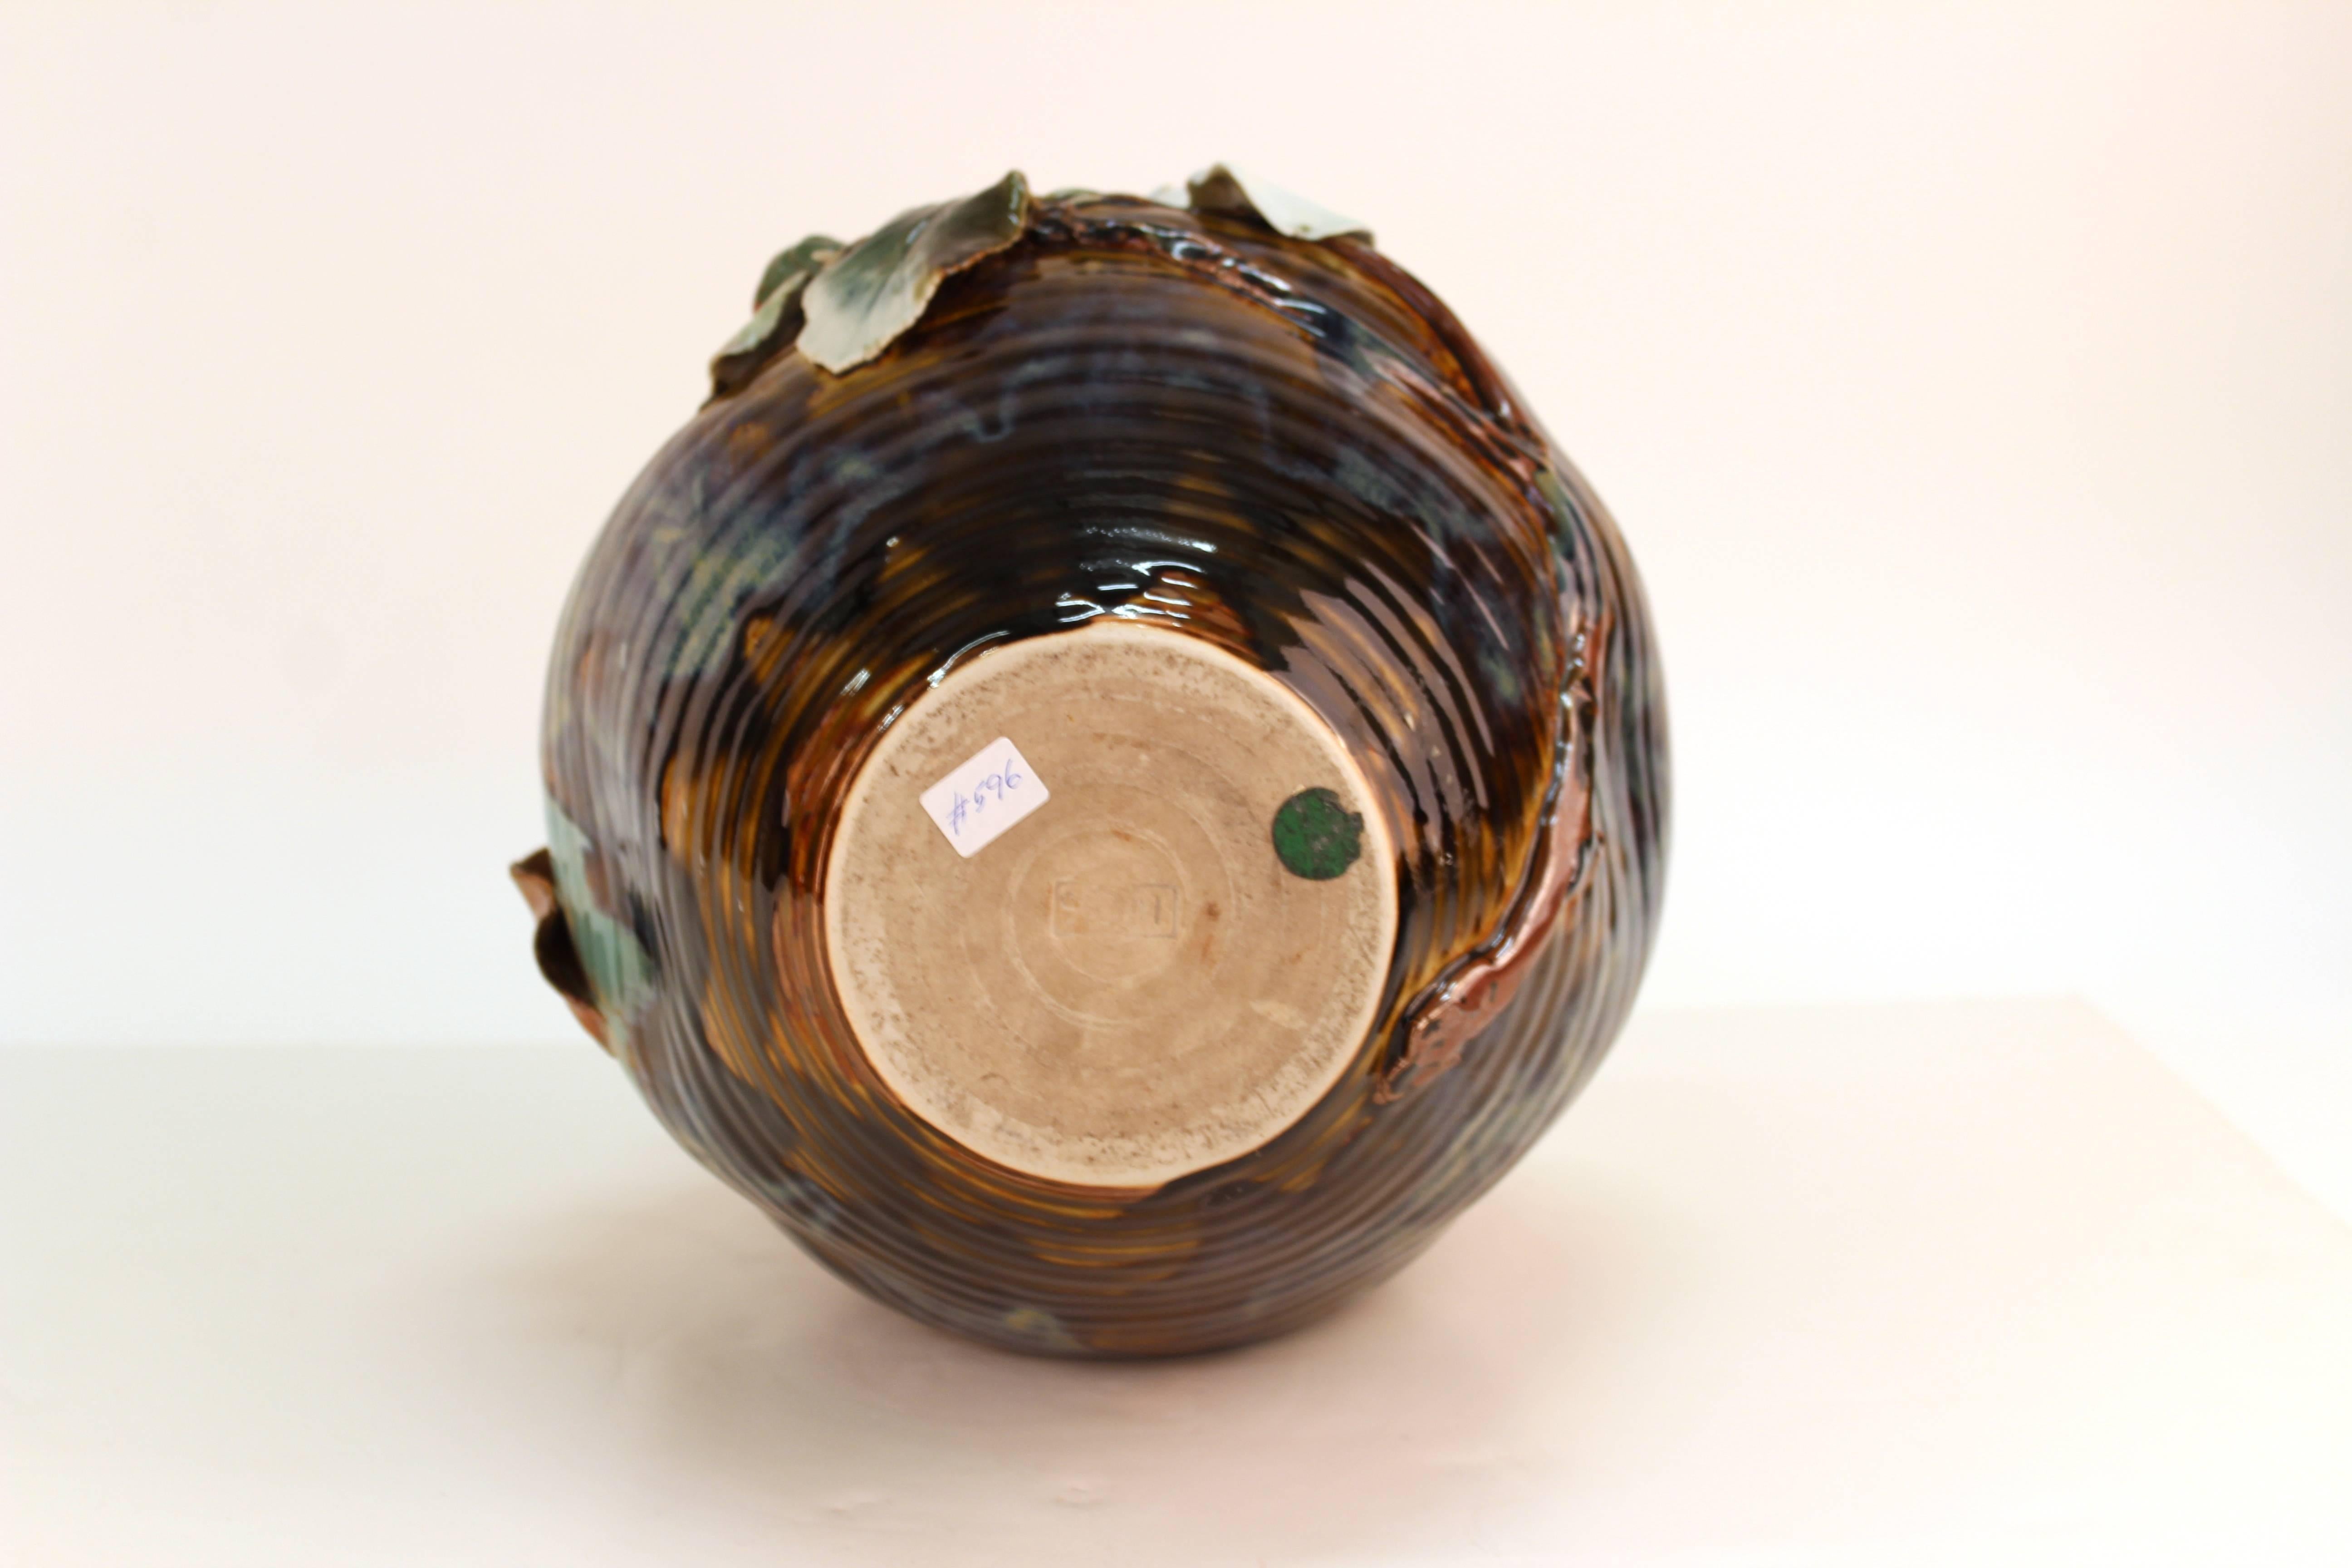 Japanese Glazed Ceramic Vase with Raised Flowers 2